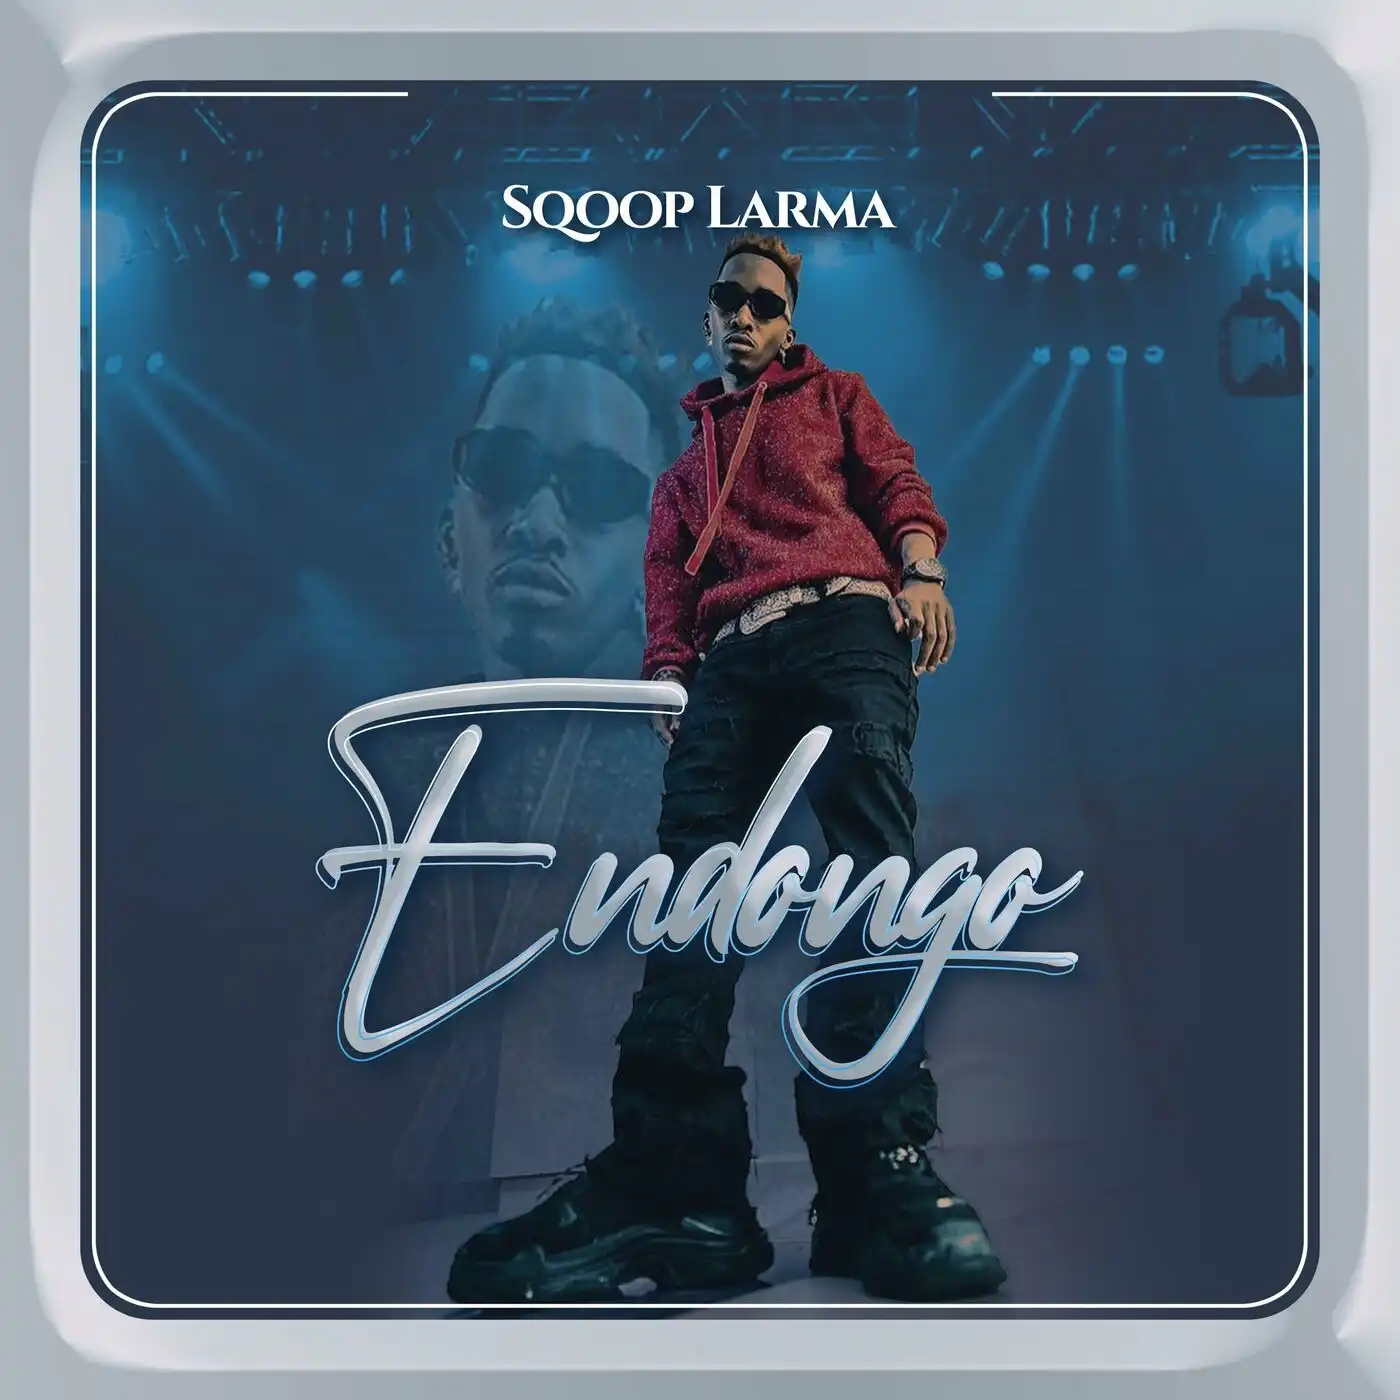 sqoop-larma-endongo-album-cover